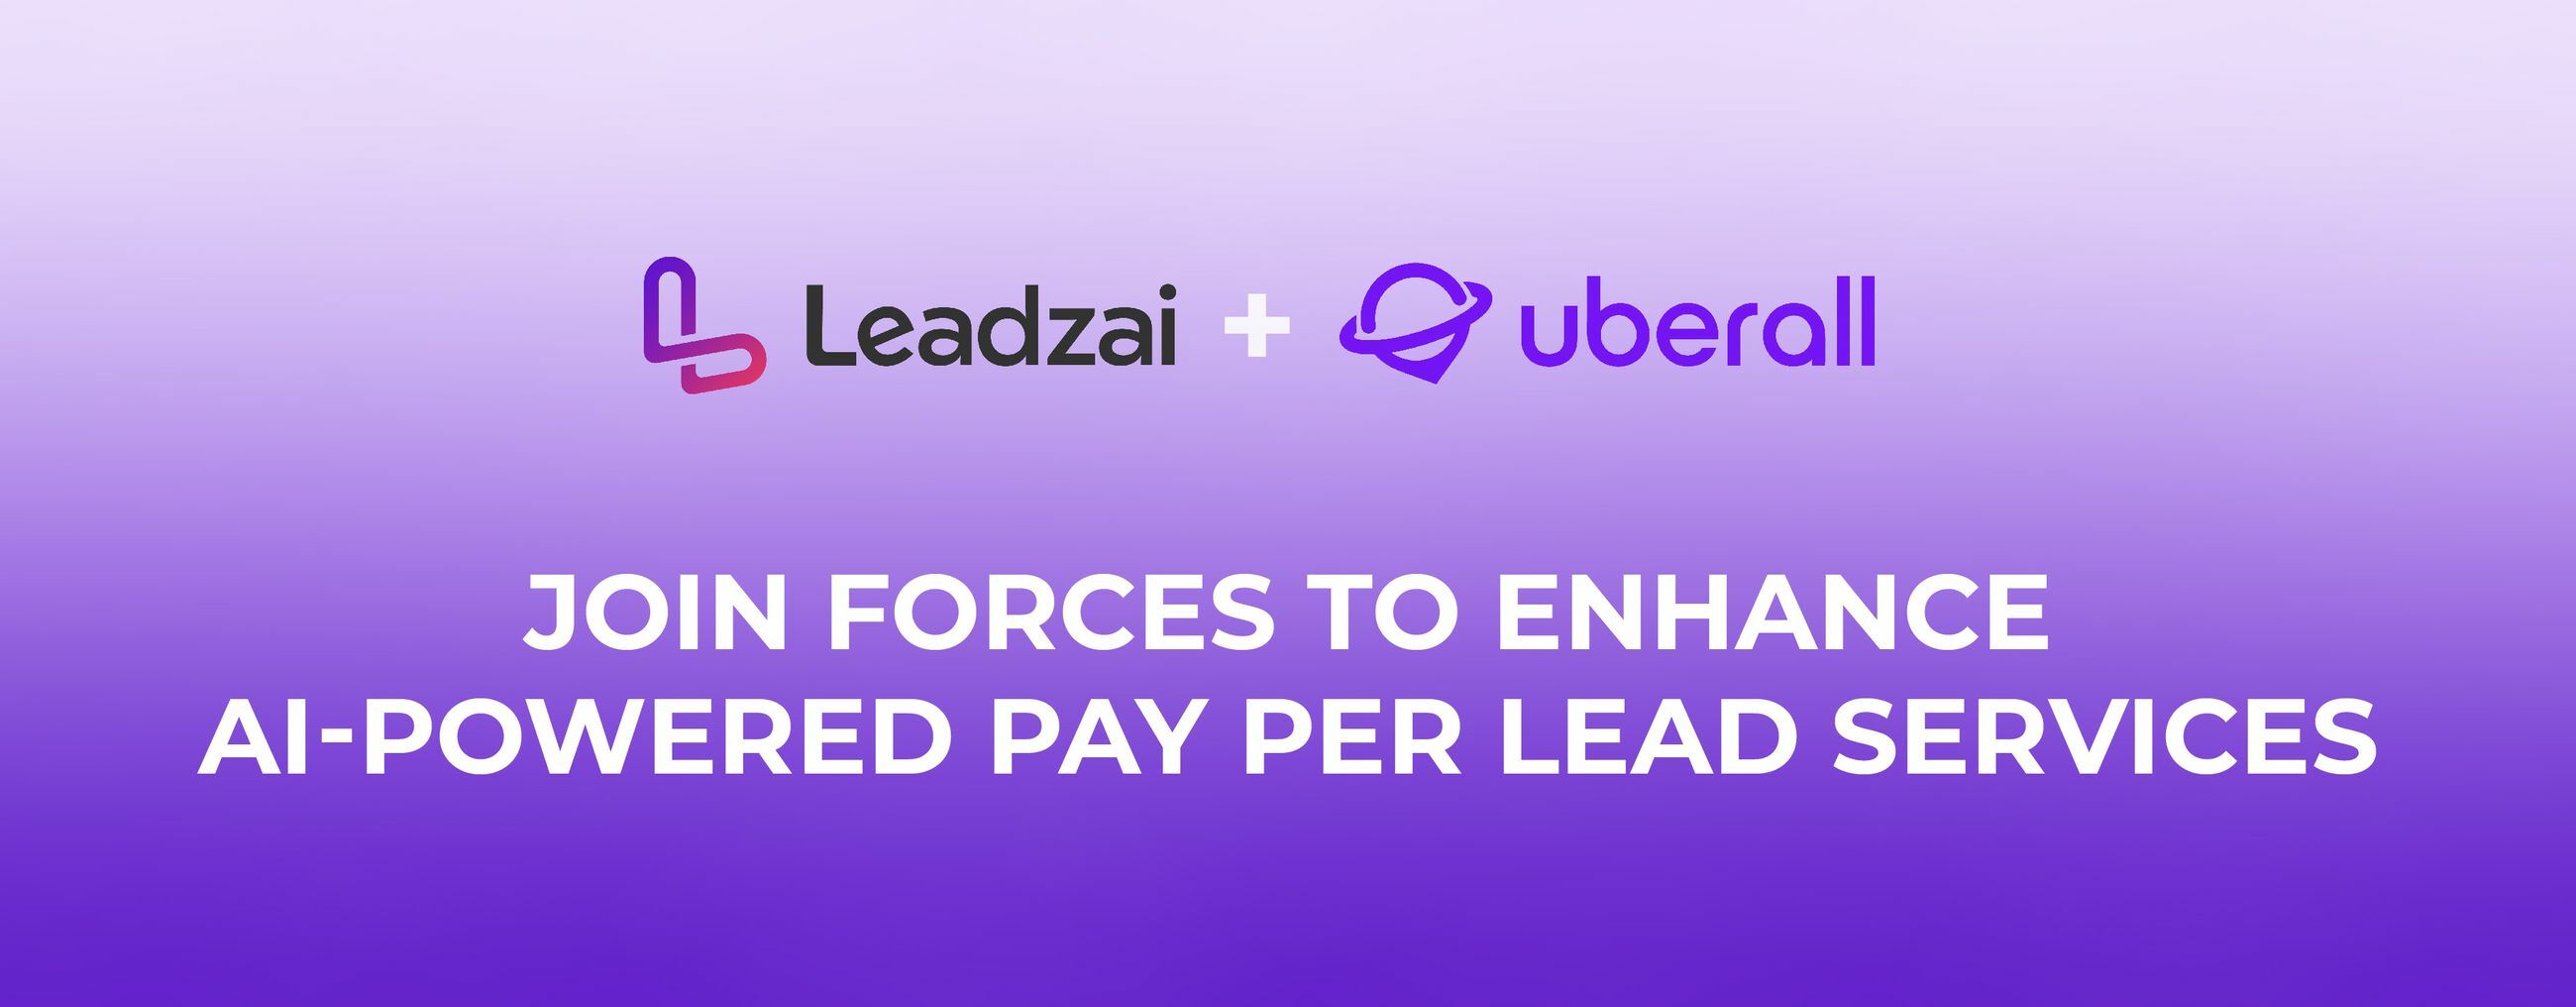 Uberall Leadzai Partnership